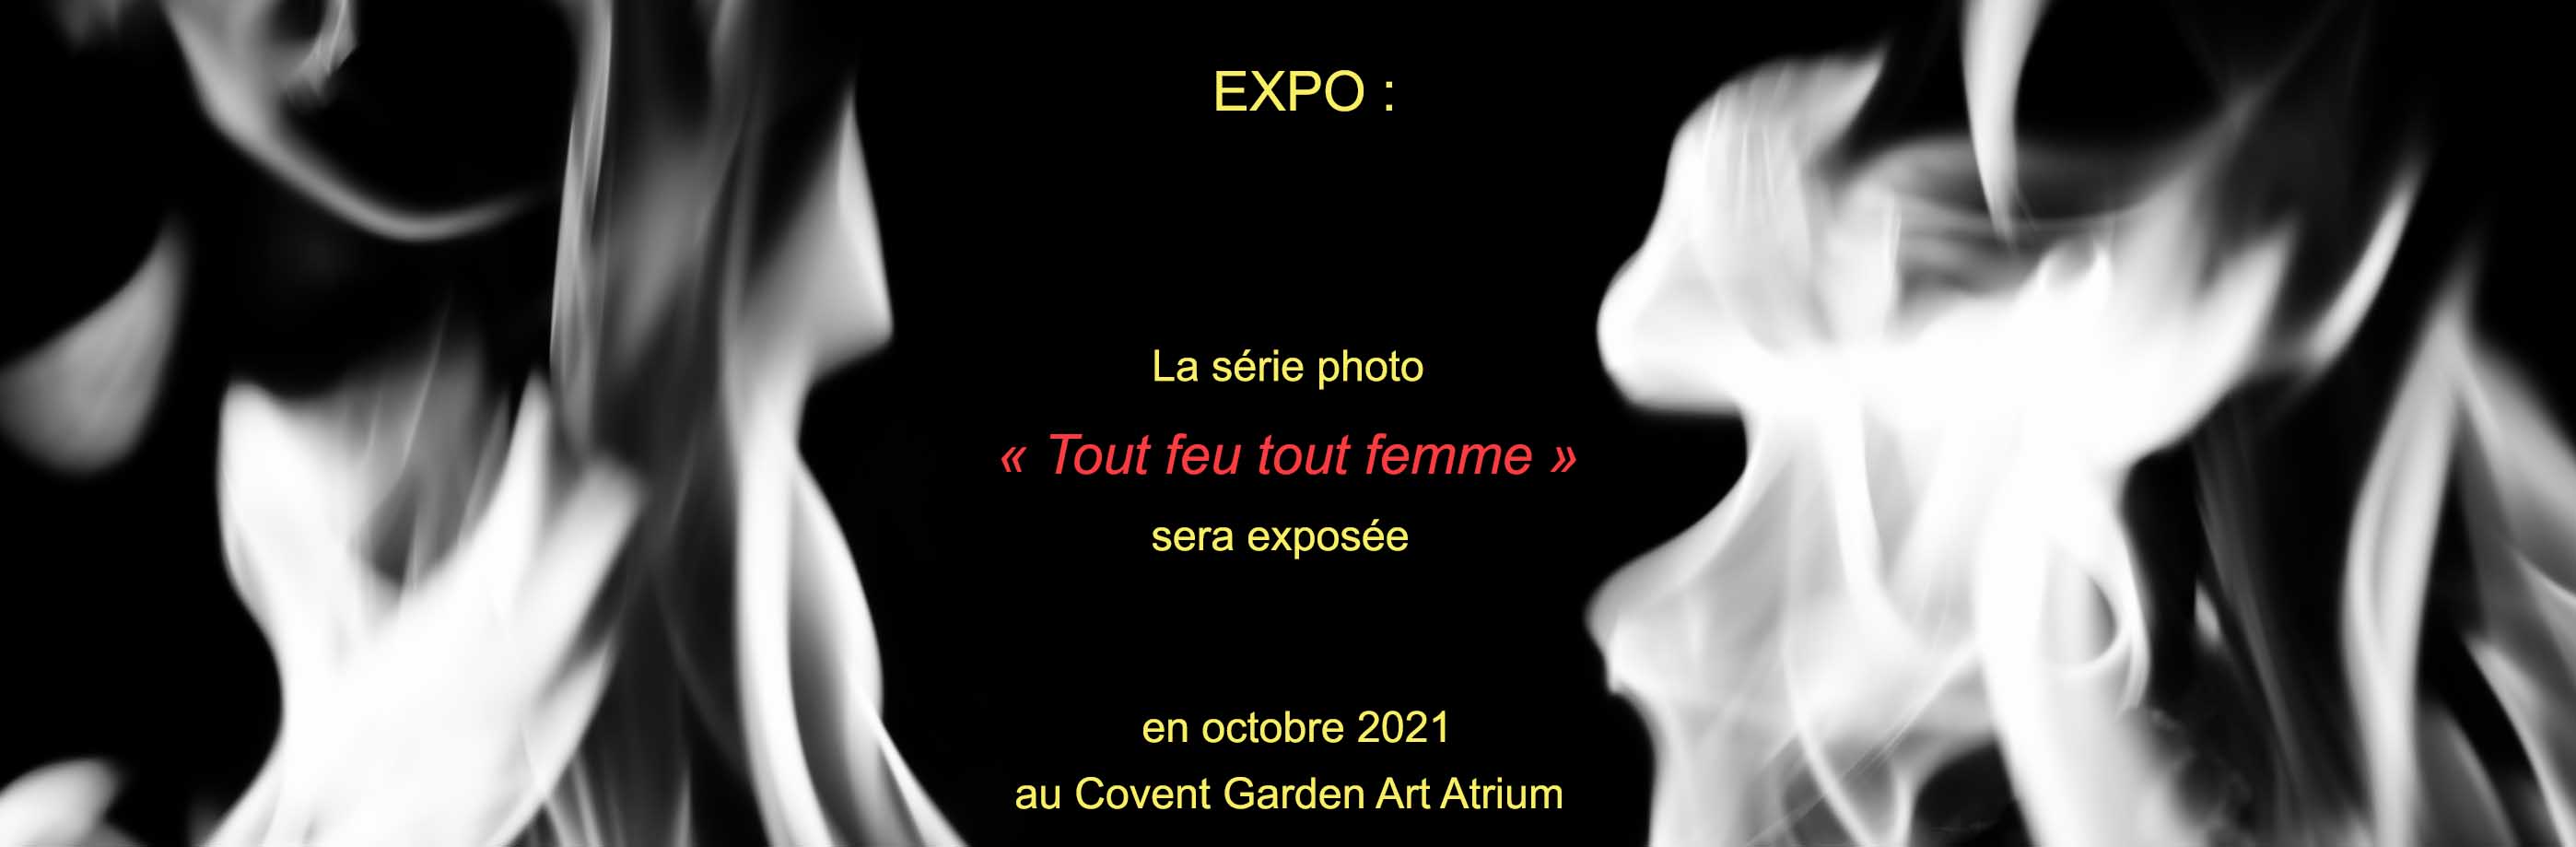 Aline Dupont Artiste Belge exposera sa série photo "Tout feu tout femme" au convent garden Art Atrium en octobre 2021